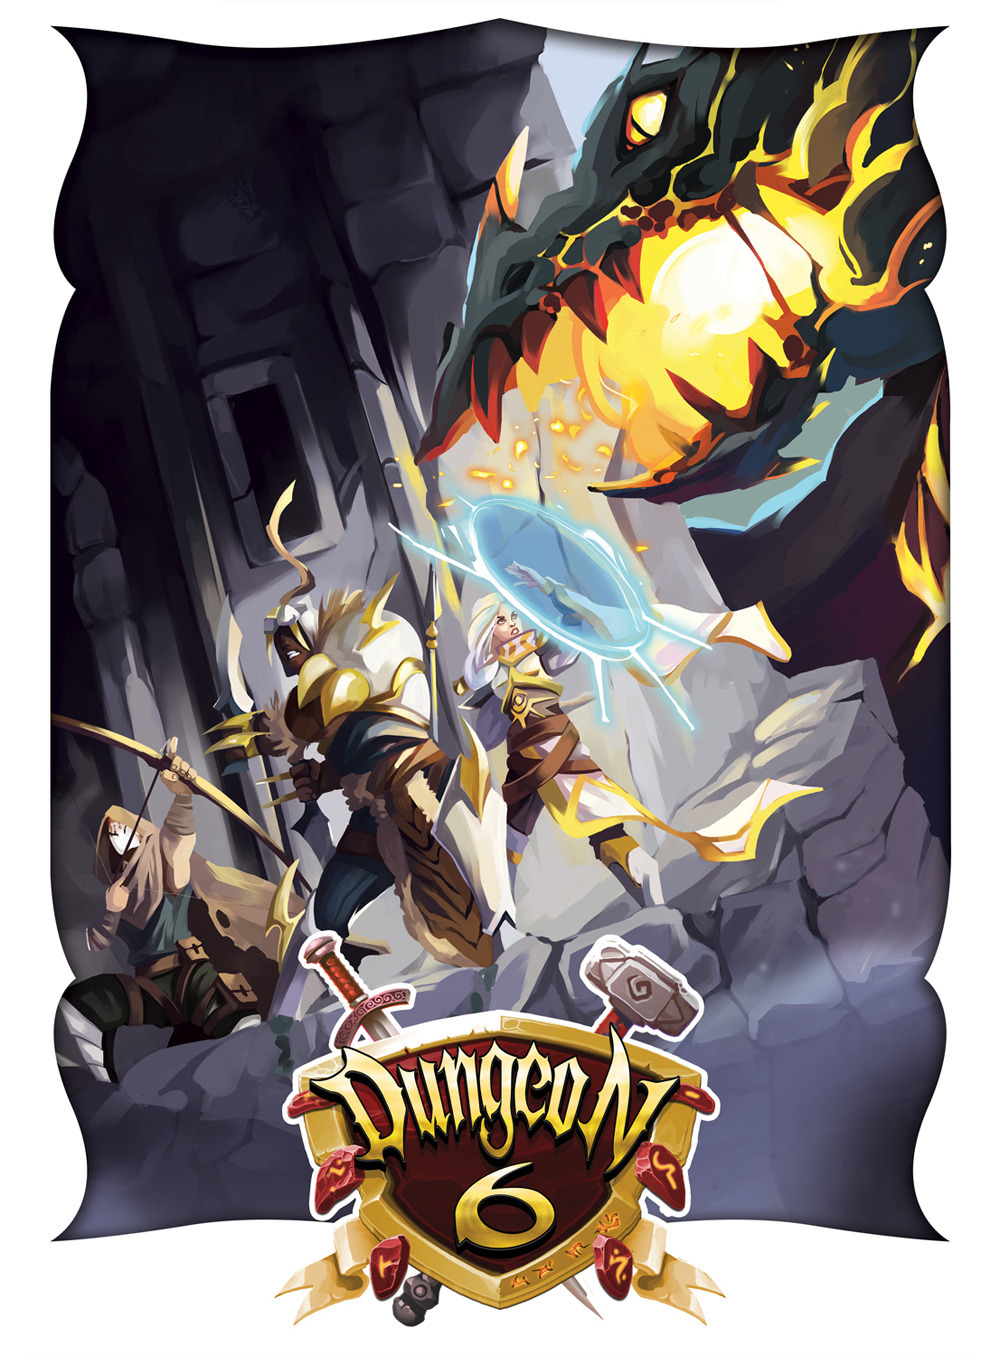 Dungeon 6. Il gioco fantasy di avventure e labirinti procedurali